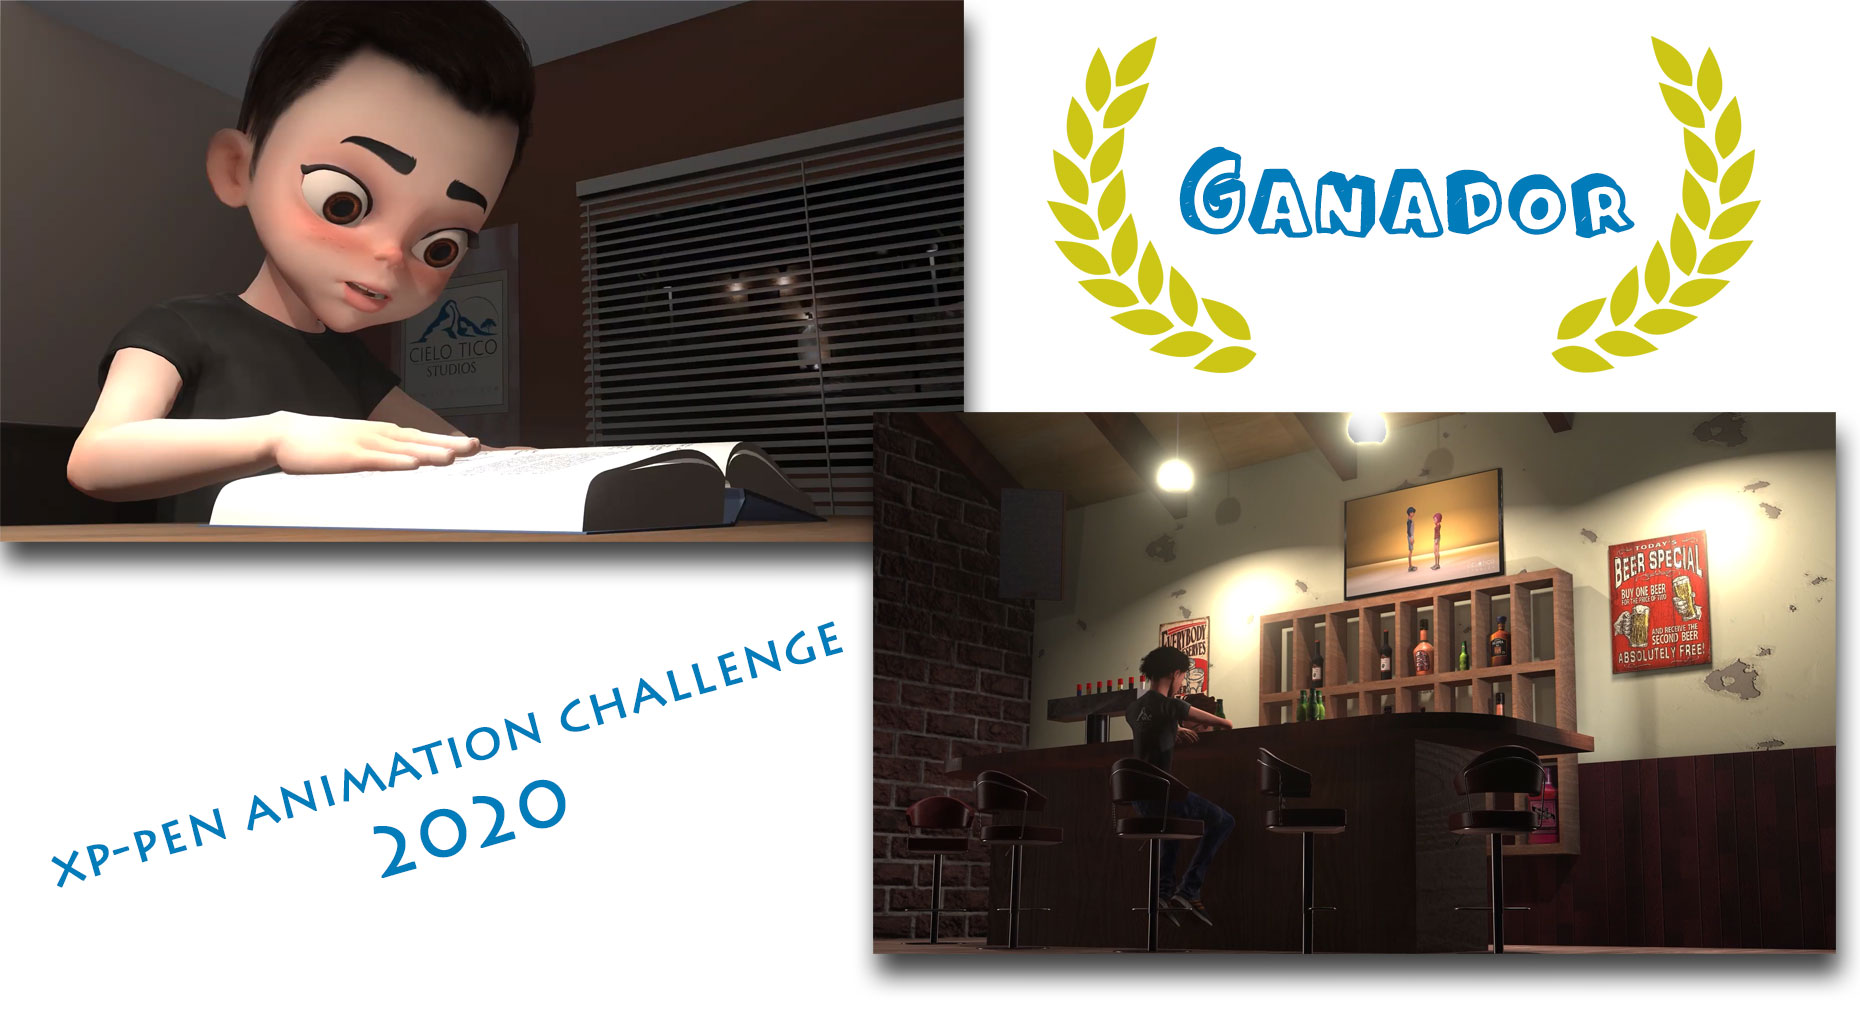 Imágenes del cortometraje ganador del XP-PEN Animation Challenge